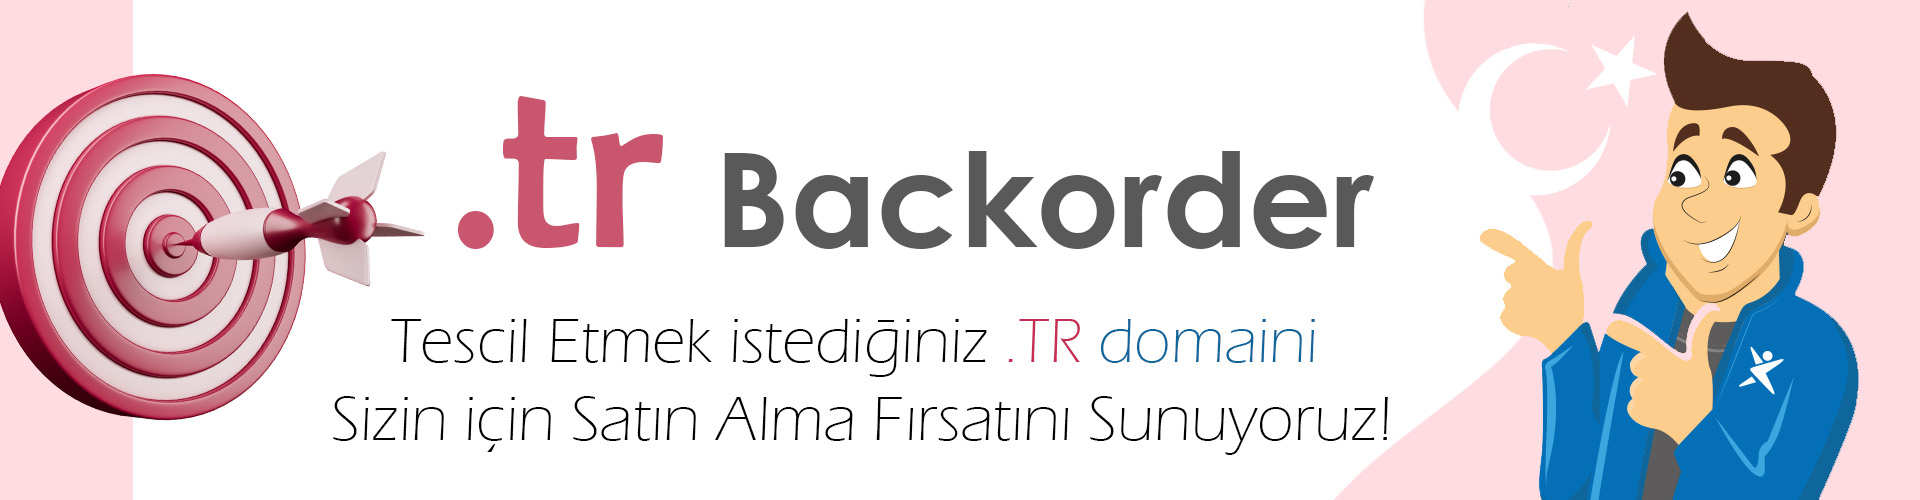 tr domain backorder